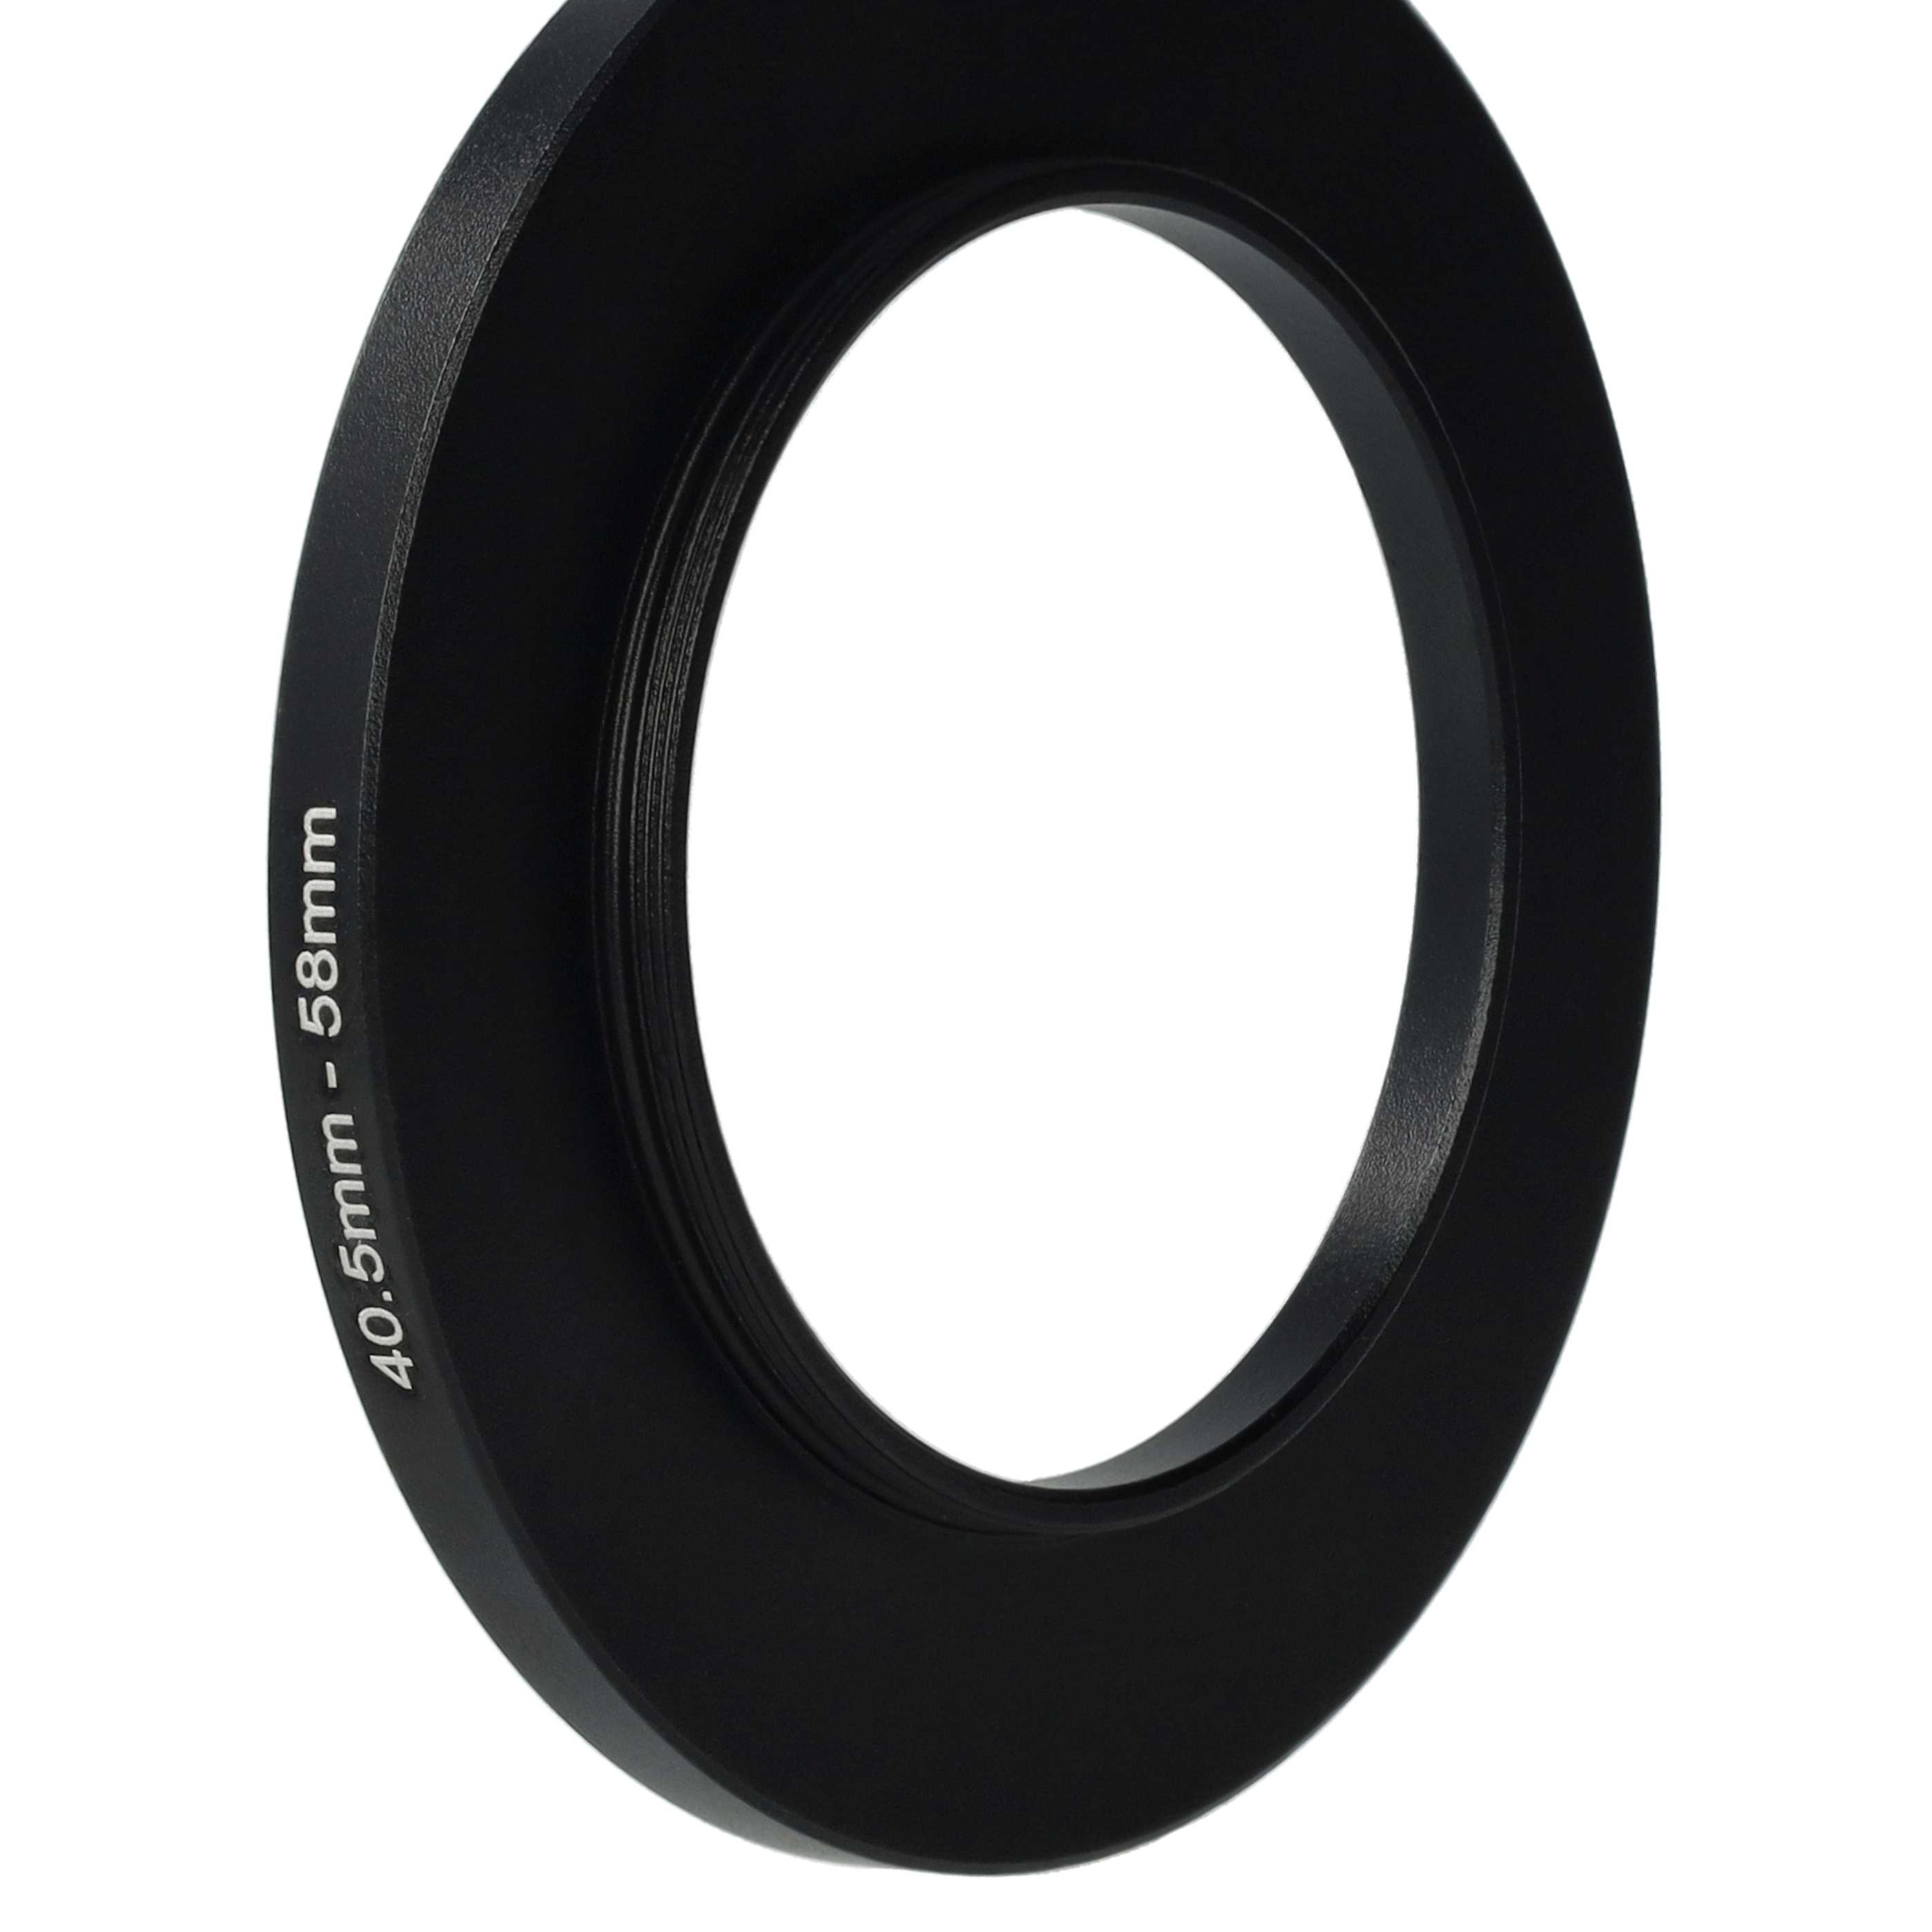 Redukcja filtrowa adapter 40,5 mm na 58 mm na różne obiektywy 